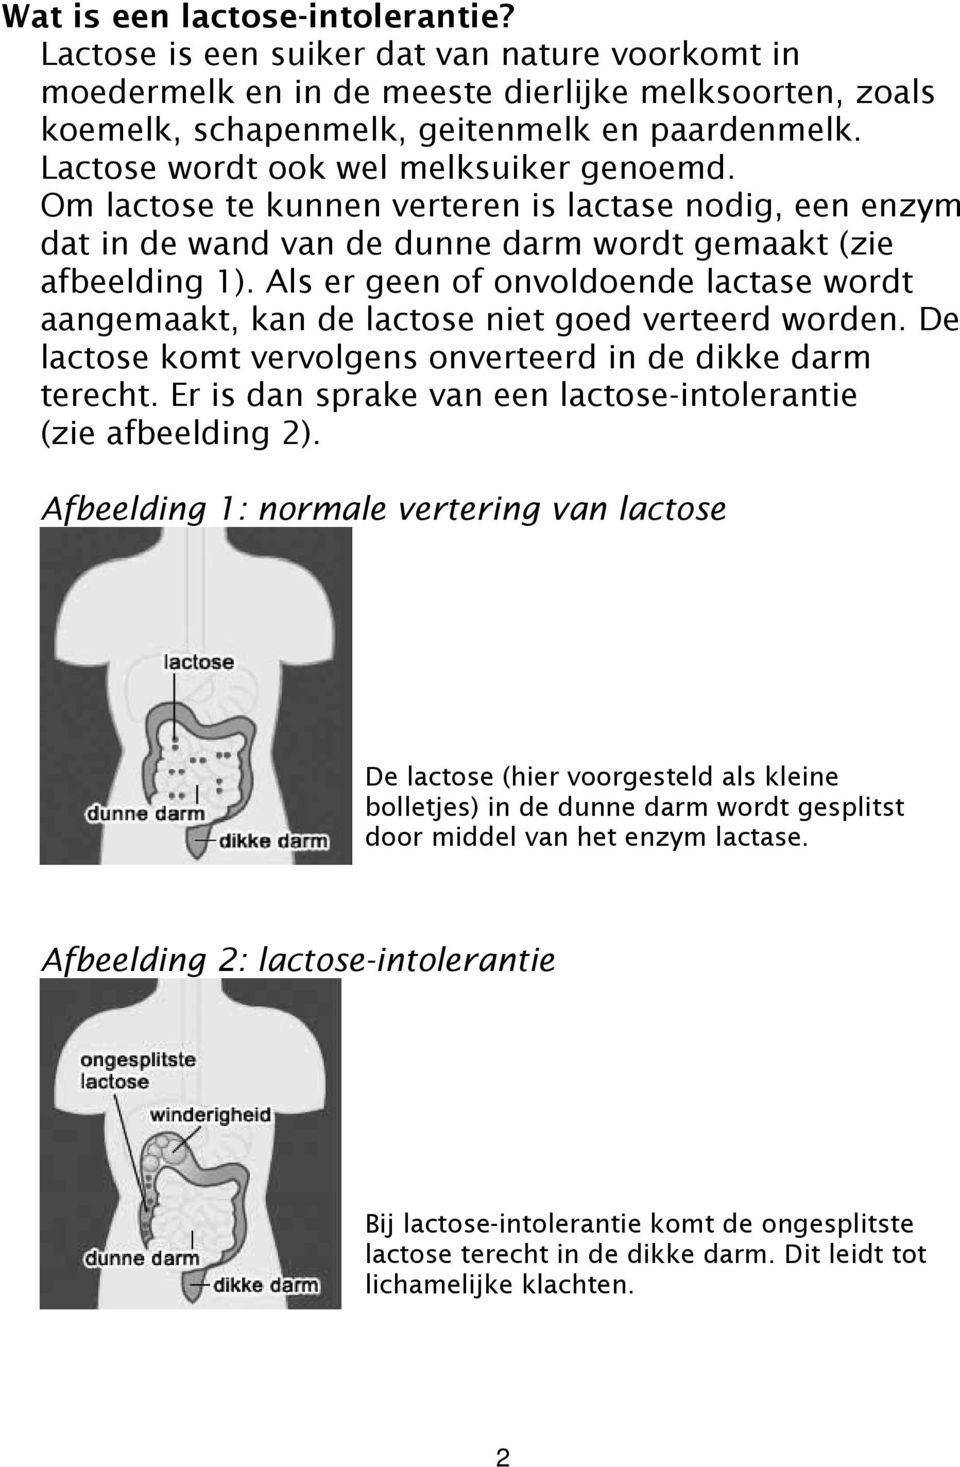 Als er geen of onvoldoende lactase wordt aangemaakt, kan de lactose niet goed verteerd worden. De lactose komt vervolgens onverteerd in de dikke darm terecht.